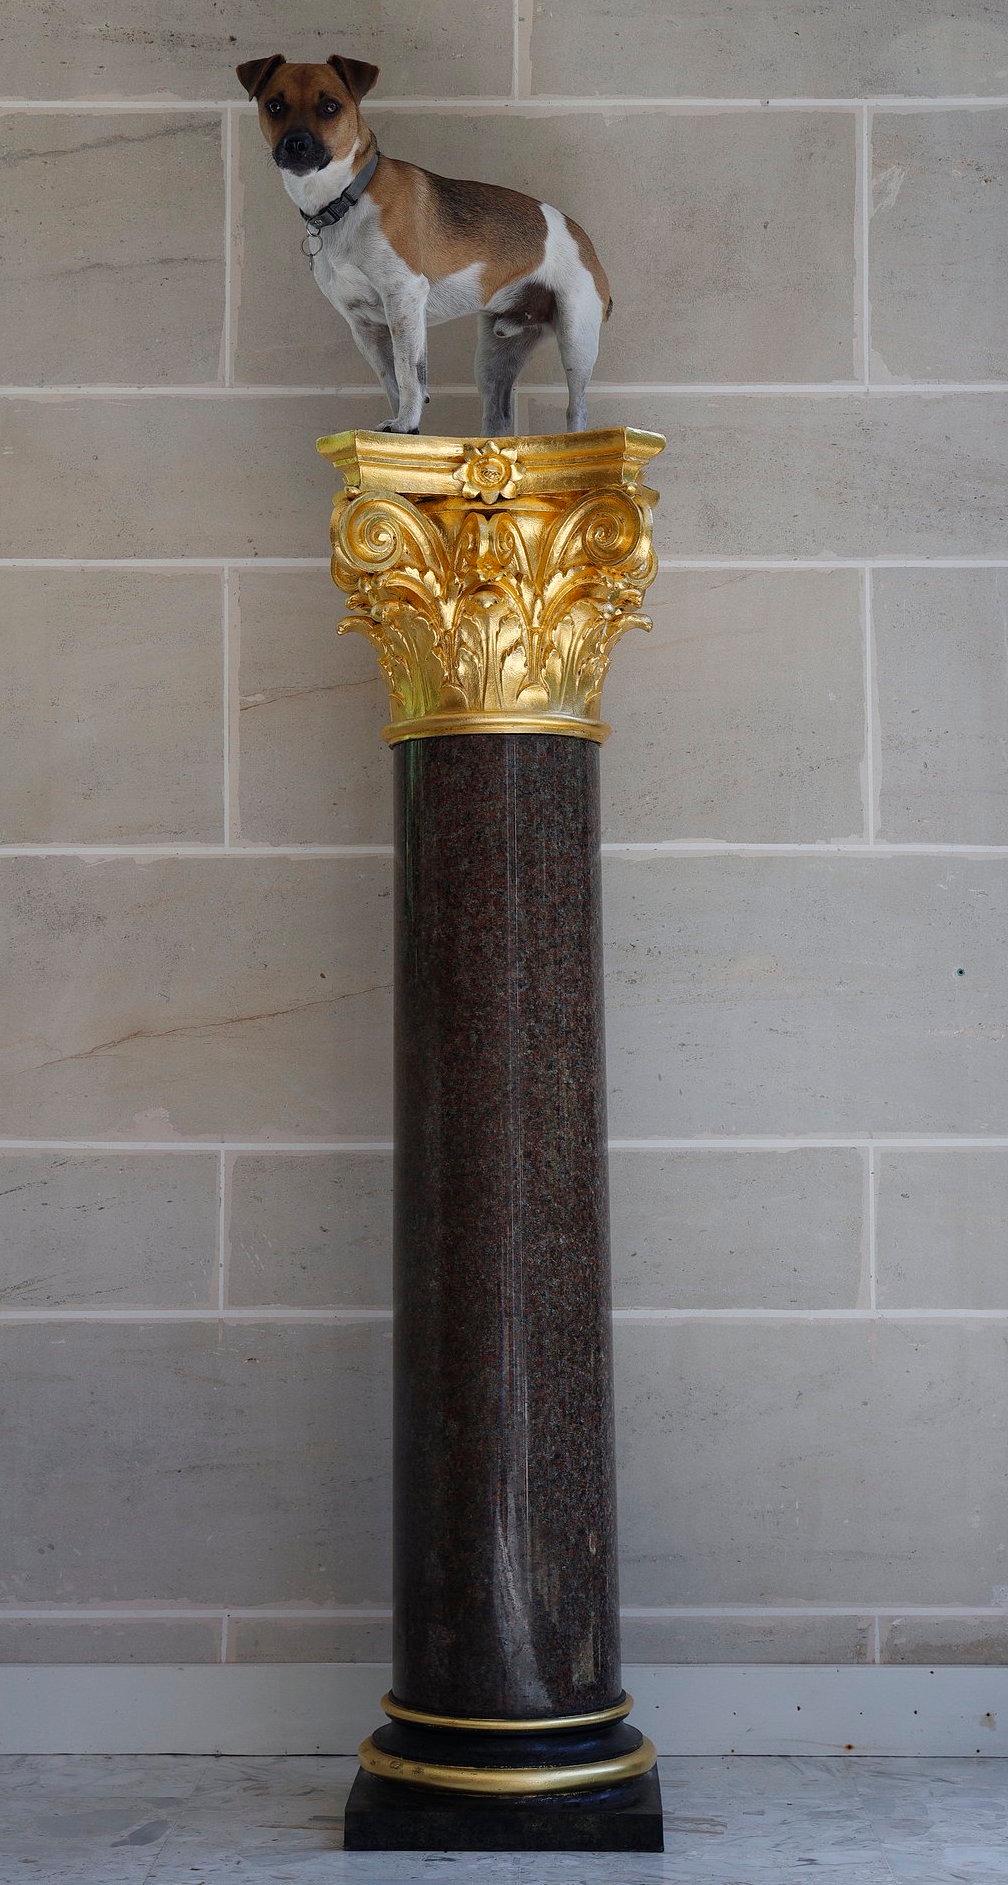 Große Säule aus rotem Granit und patinierter Bronze im neoklassizistischen Stil mit korinthischem Kapitell. Sie steht auf einem runden, abgestuften Sockel über einem quadratischen Sockel. Französisches Werk des 20. Jahrhunderts.

